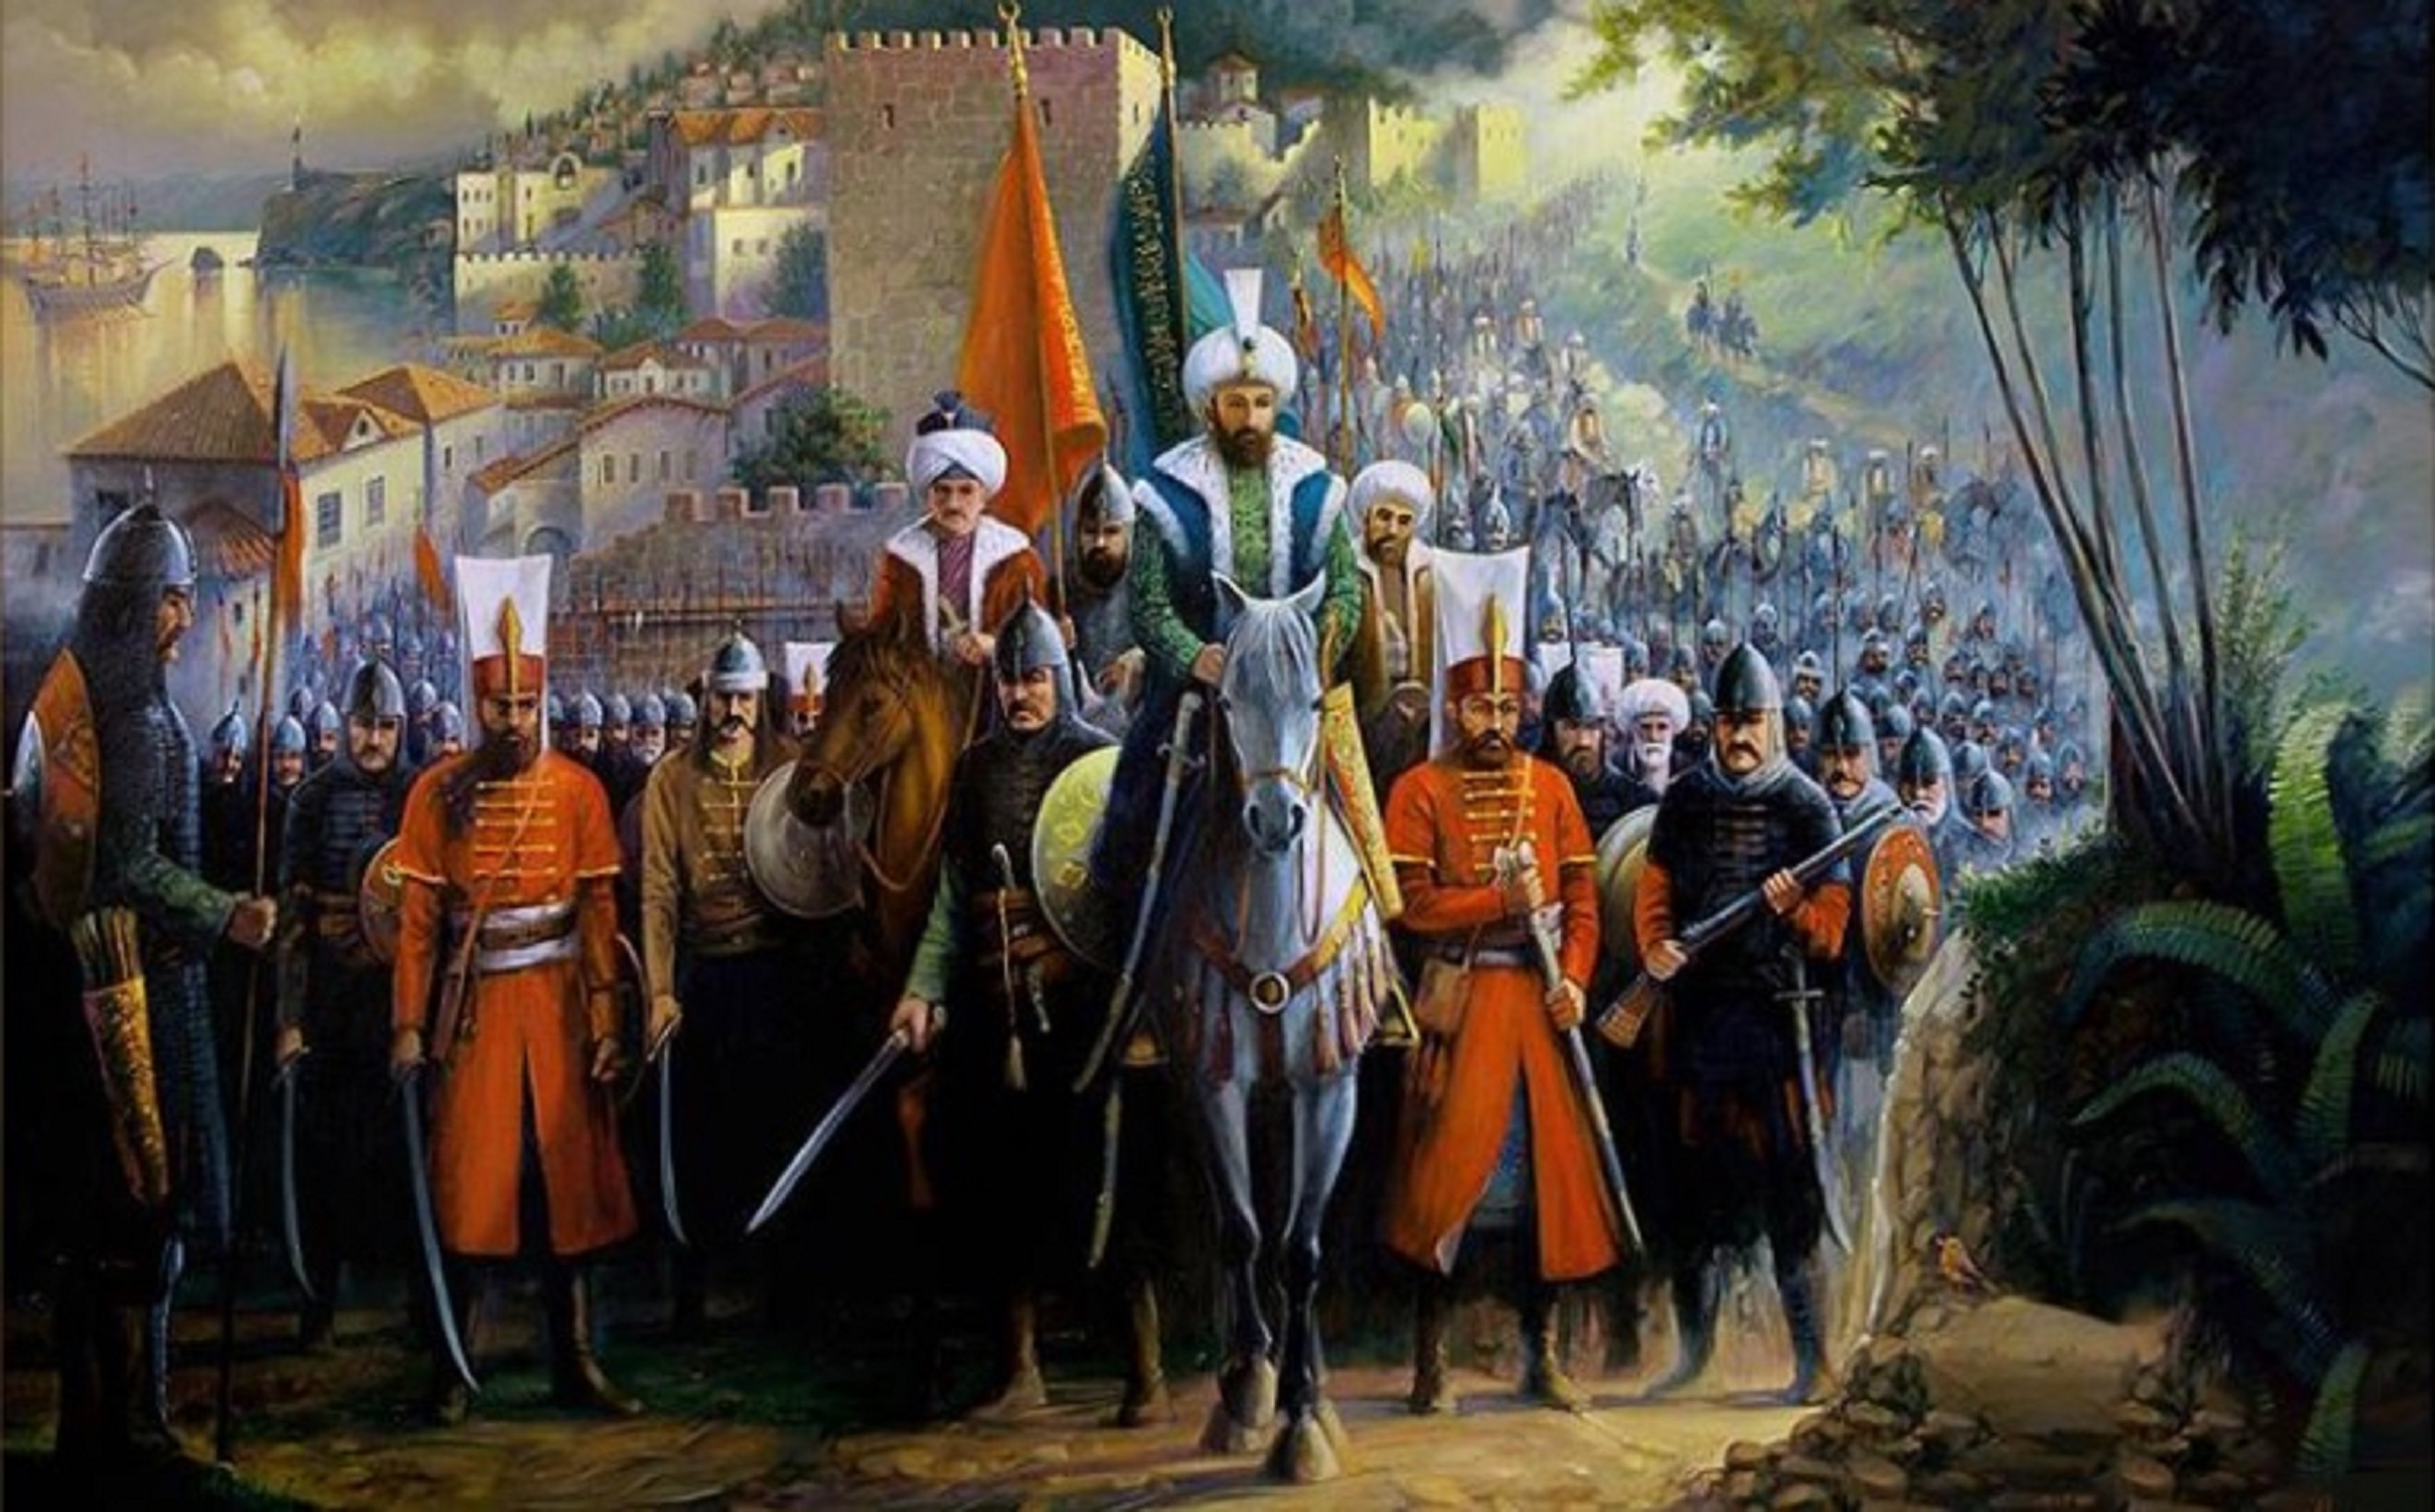 السلطان الغازى محمد خان الثانى الشهير بـ"الفاتح"